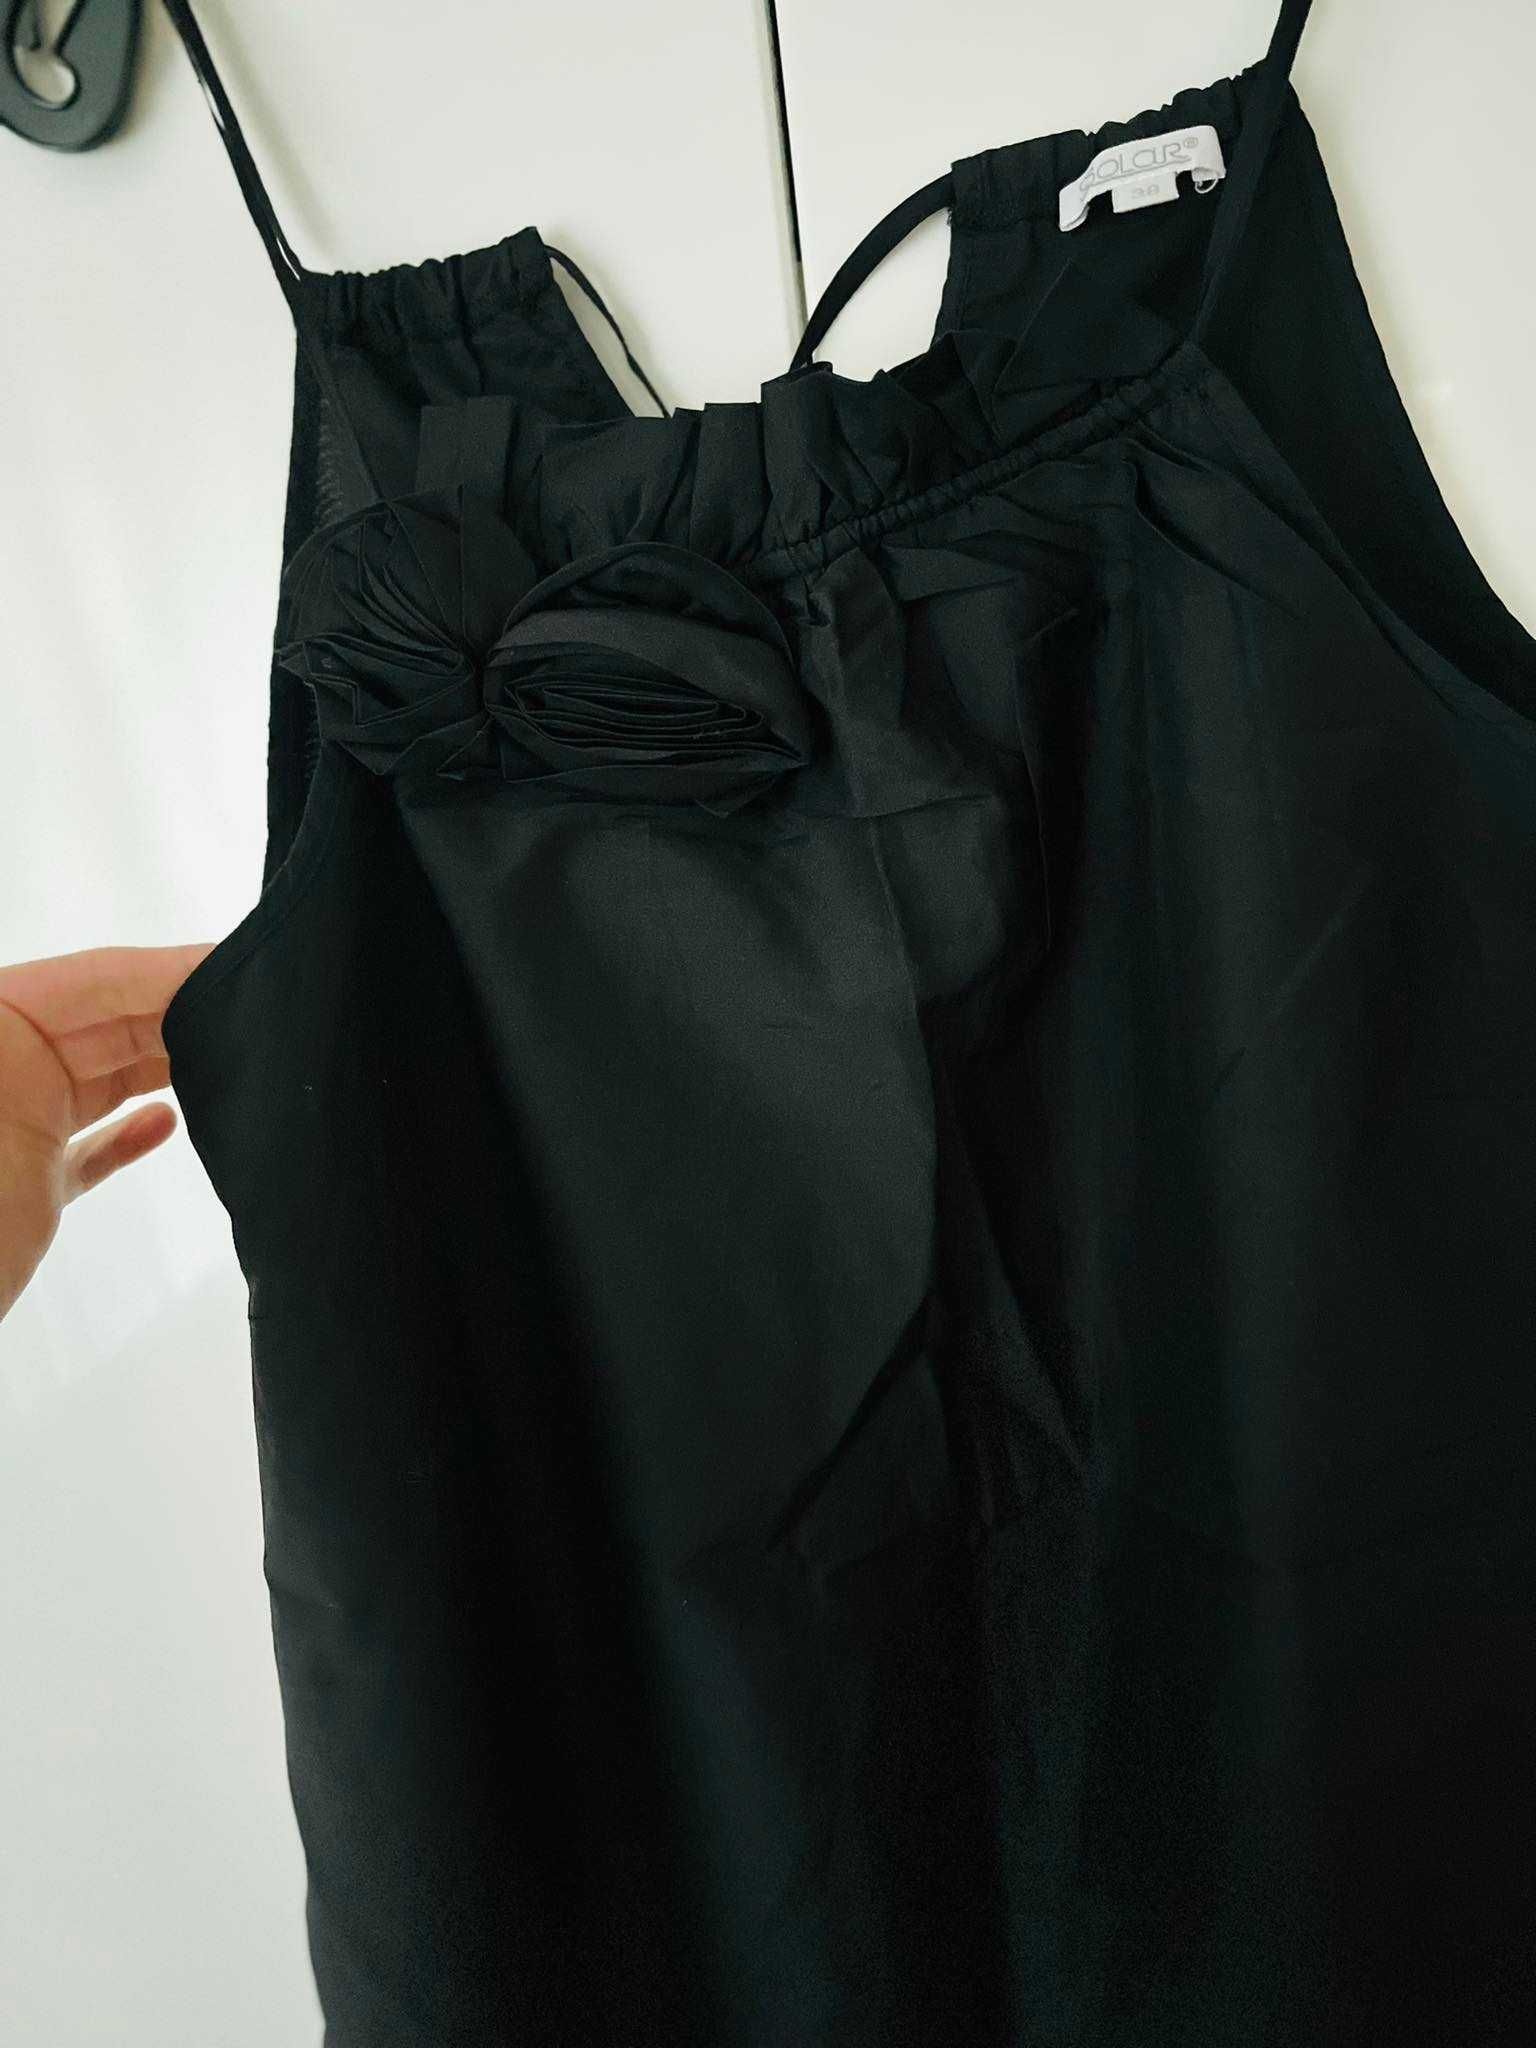 SOLAR elegancka czarna bluzka na ramiączkach 38/M. Sylwester święta…